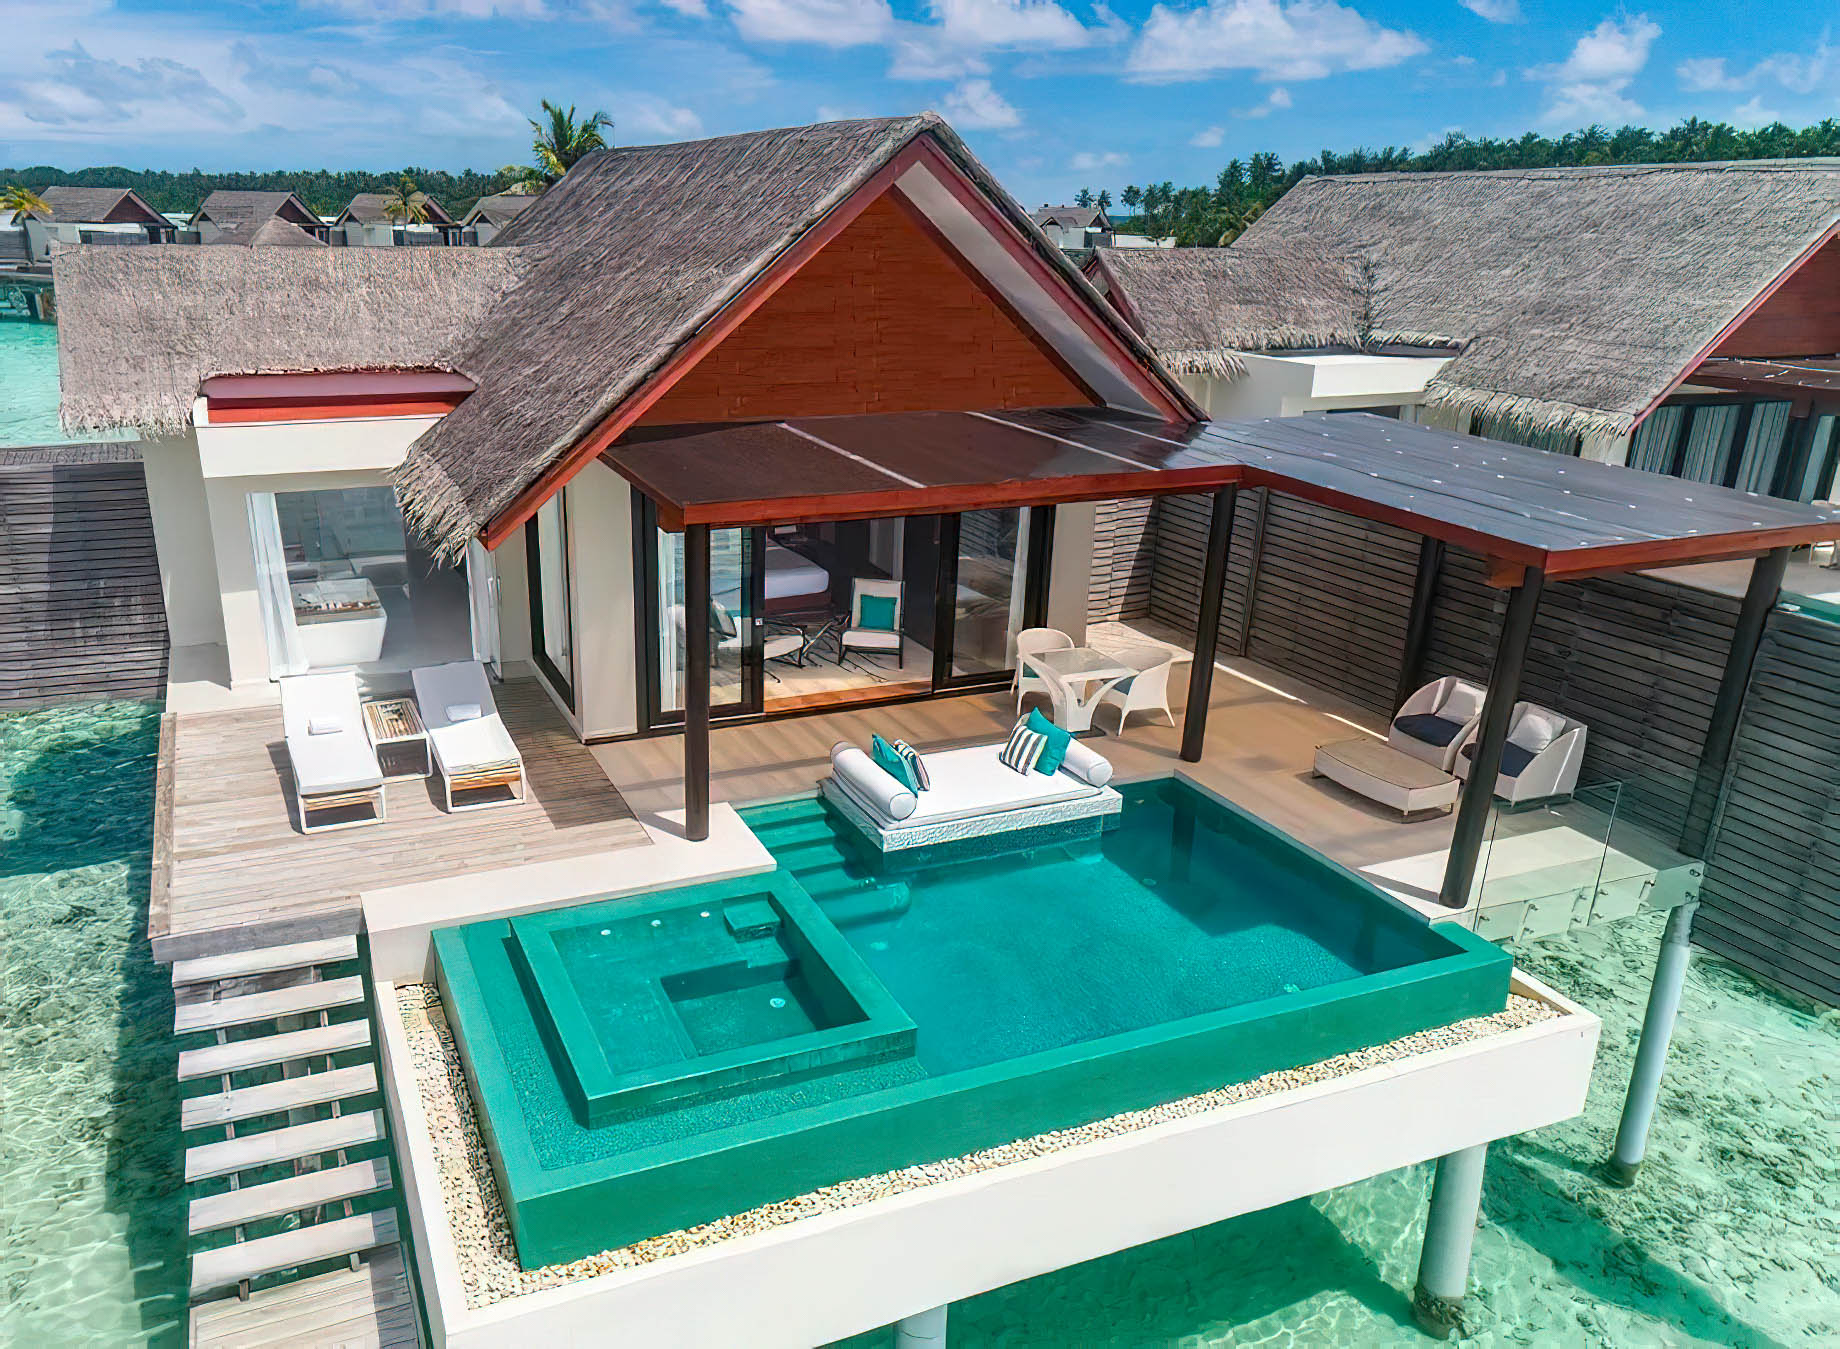 Niyama Private Islands Maldives Resort – Dhaalu Atoll, Maldives – Water Pool Villa Aerial View